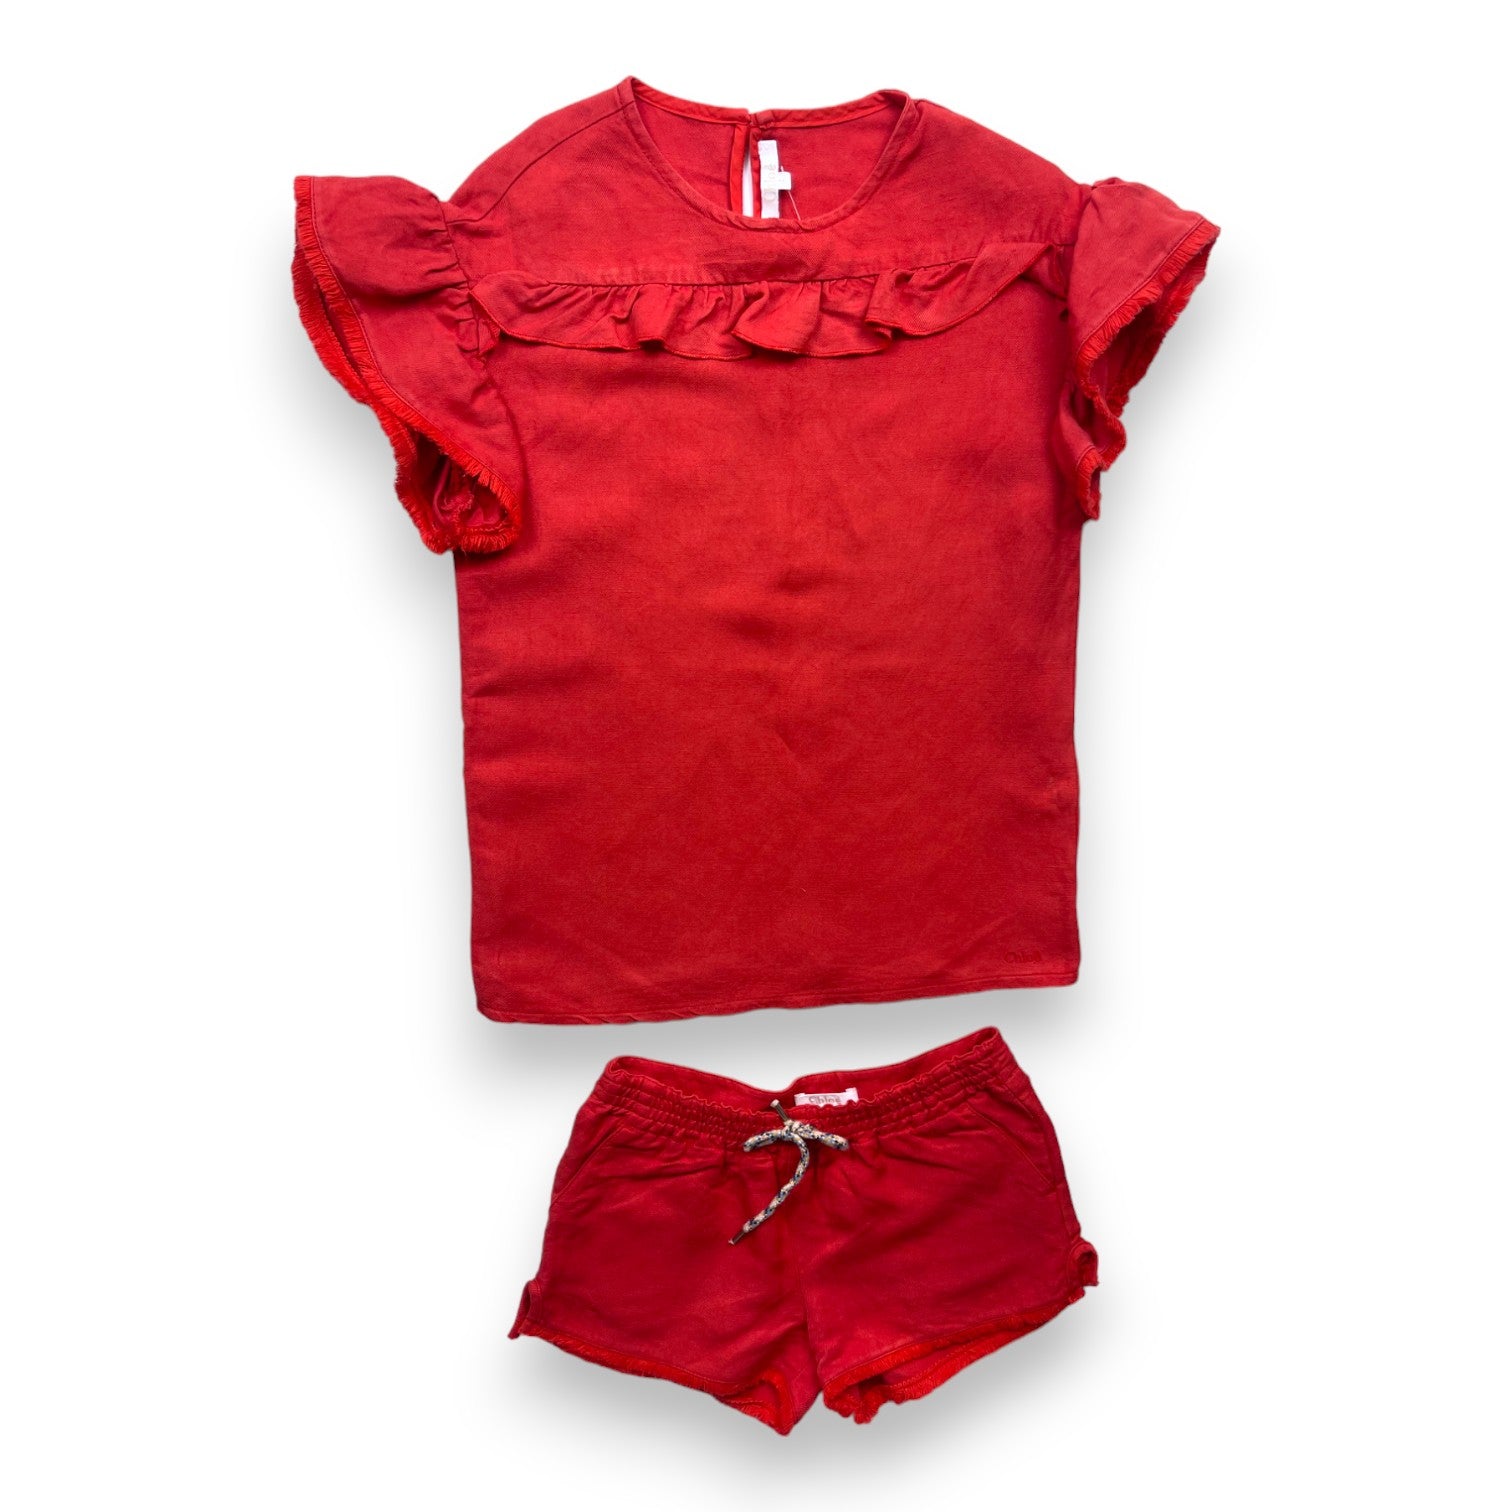 CHLOÉ - Ensemble short / t-shirt rouge en lin à franges - 4 ans